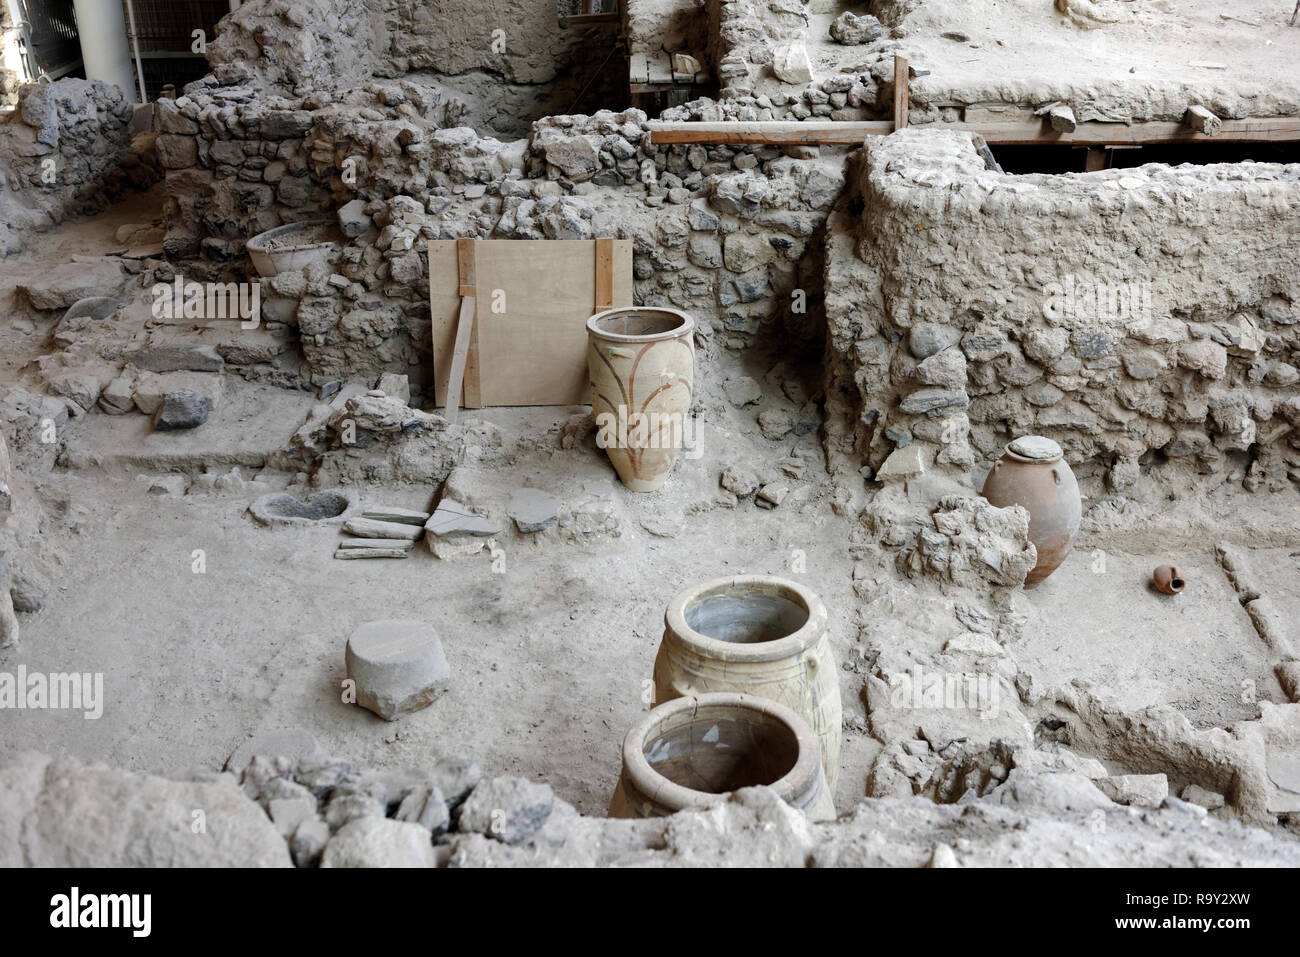 Il sito archeologico di Akrotiri, a Minoan Età del Bronzo insediamento la vulcanica isola greca di Santorini (Thera), in Grecia. La liquidazione è stata dest Foto Stock